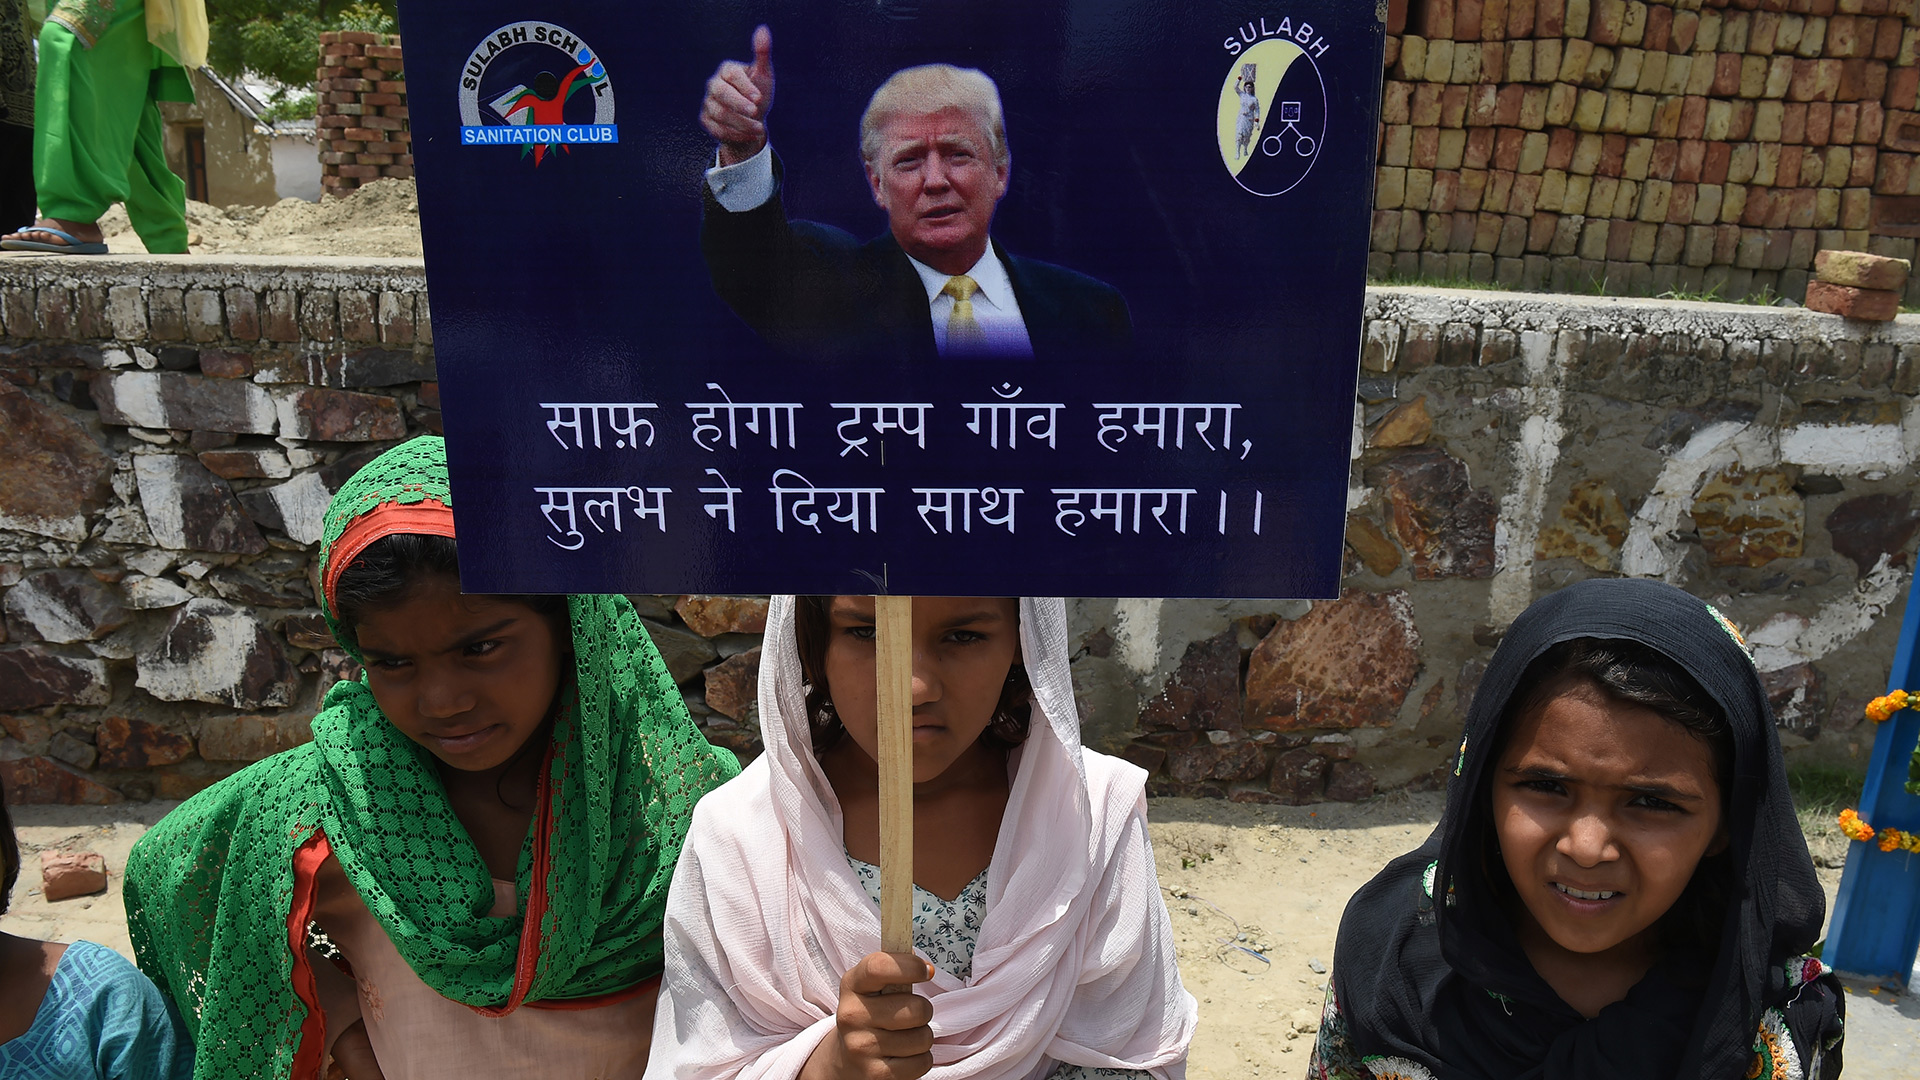 Un pueblo de India cambia de nombre y se llamará 'Trump' 2